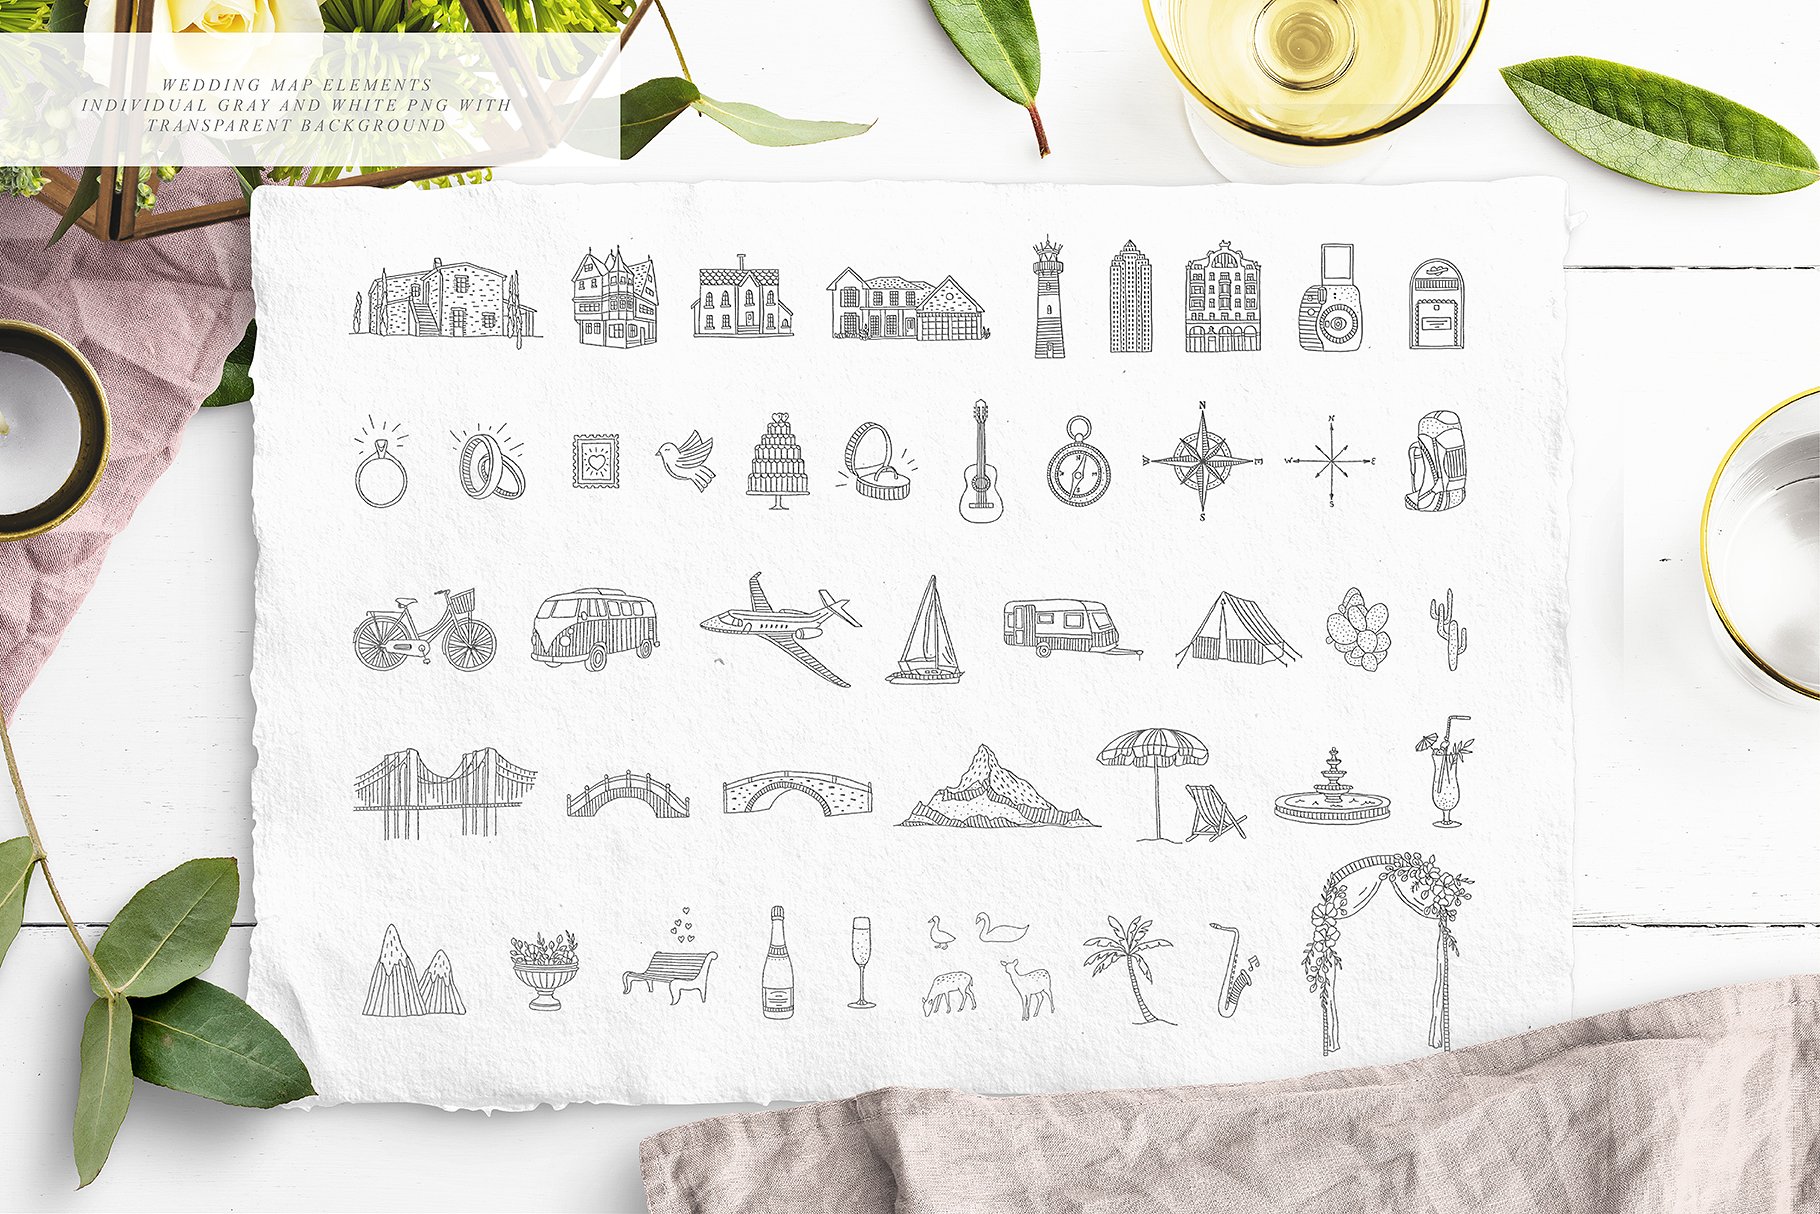 创意文艺风格婚礼邀请函地图设计素材包 Wedding Map Creator Collection插图7